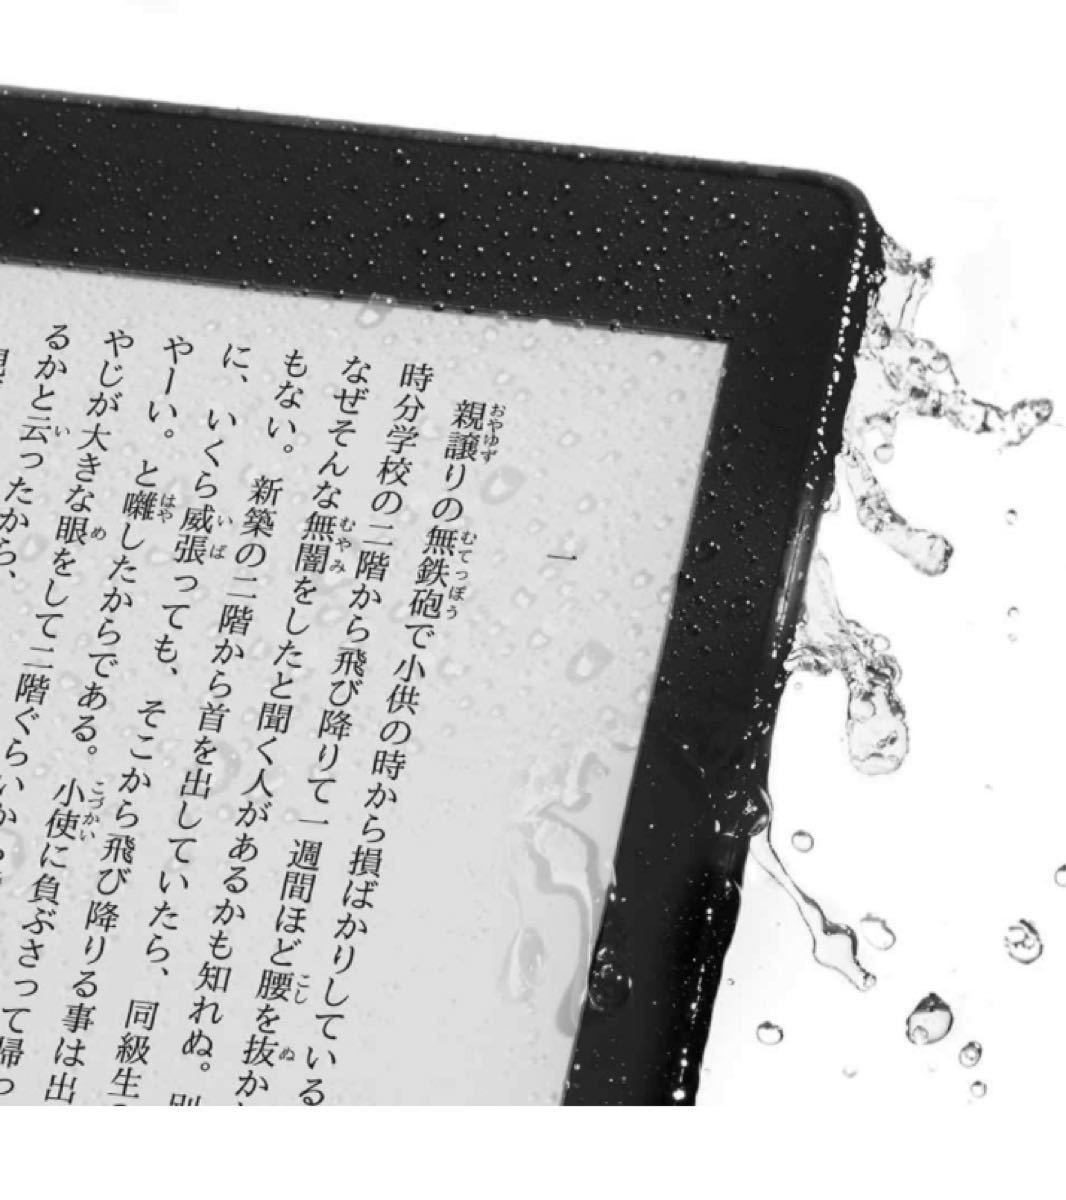 新品未開封 Kindle Paperwhite 8GB ブラック 広告付き